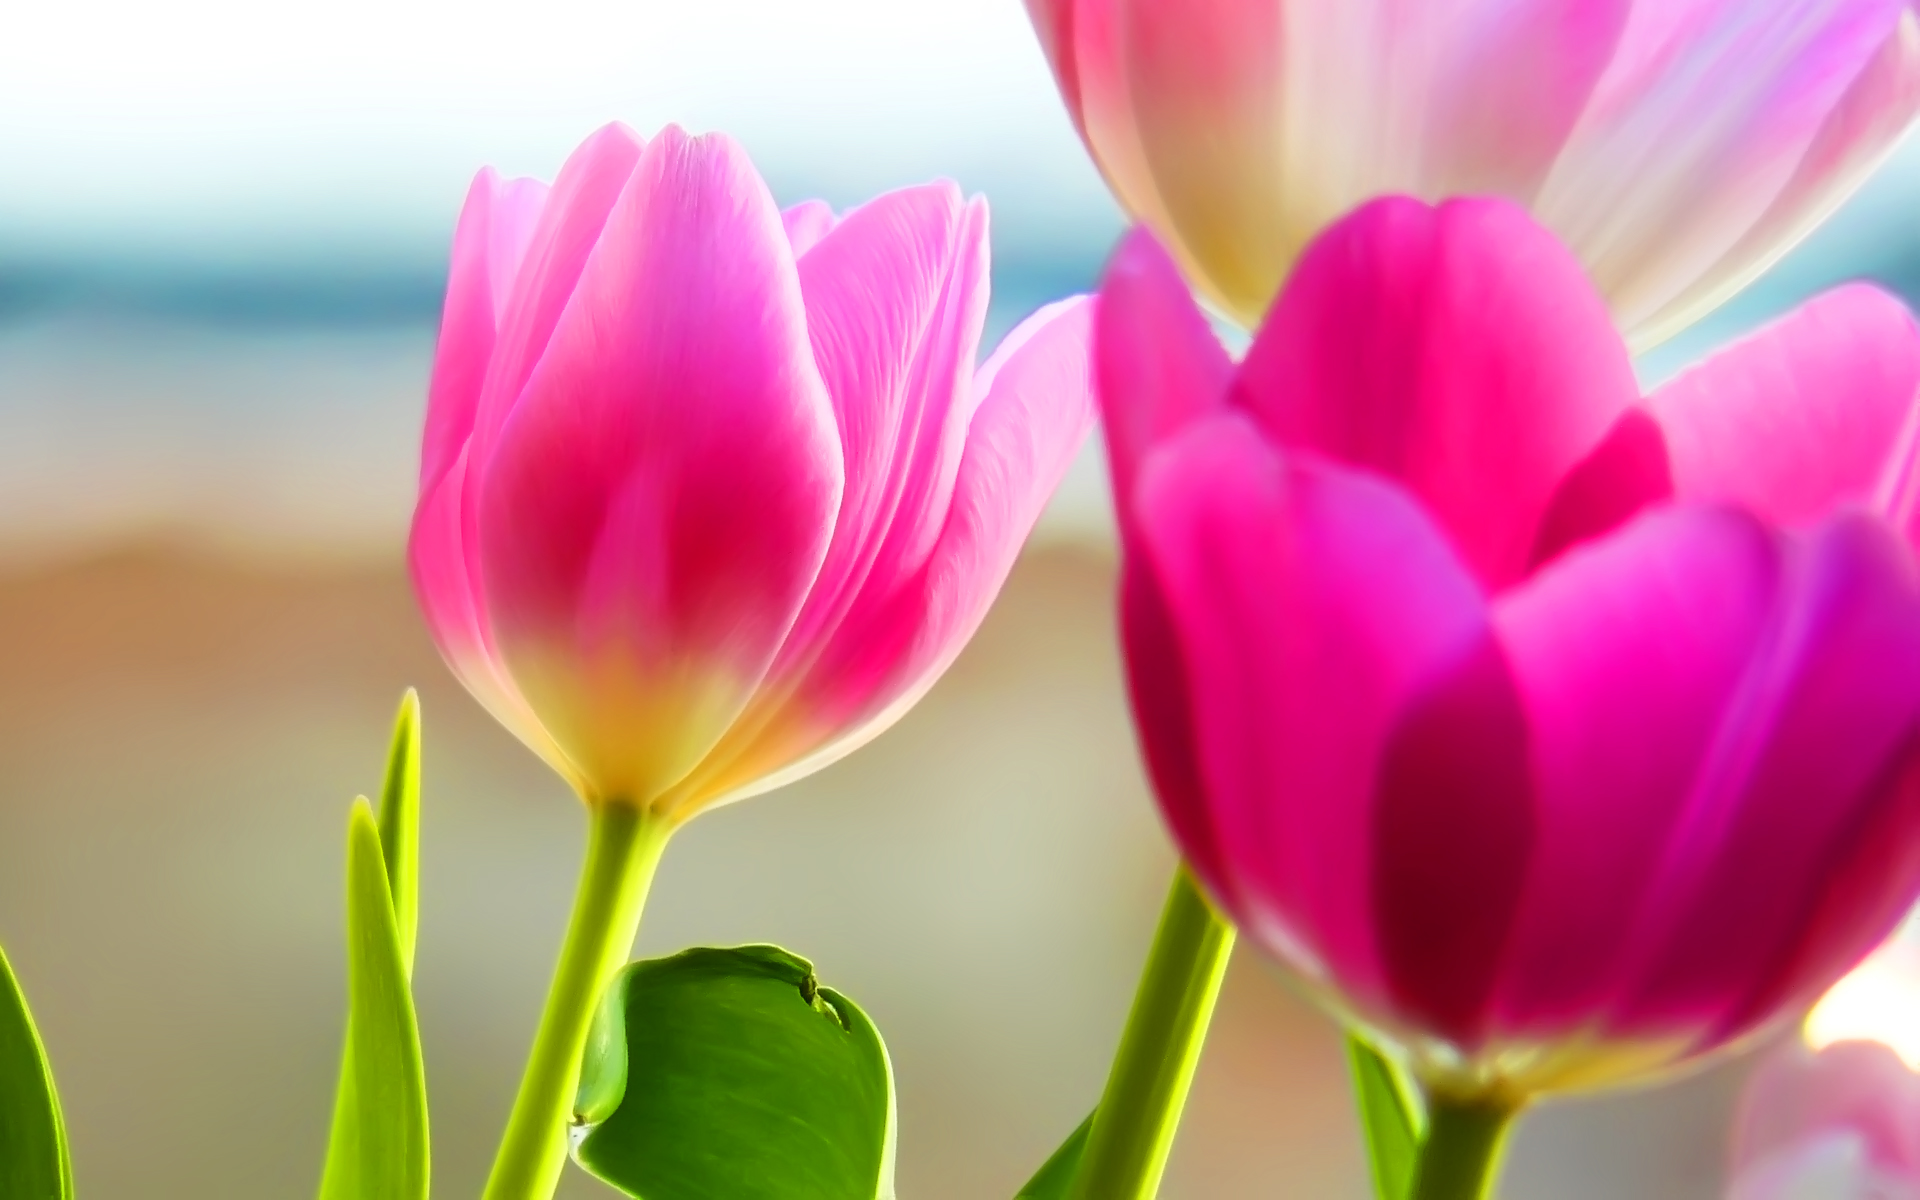 Mùa xuân đang tới bên bạn với bộ sưu tập hình nền Spring tulips desktop wallpaper đầy sắc màu và tươi trẻ. Đó là món quà tuyệt vời cho những người yêu thích mùa xuân và hoa tulip.